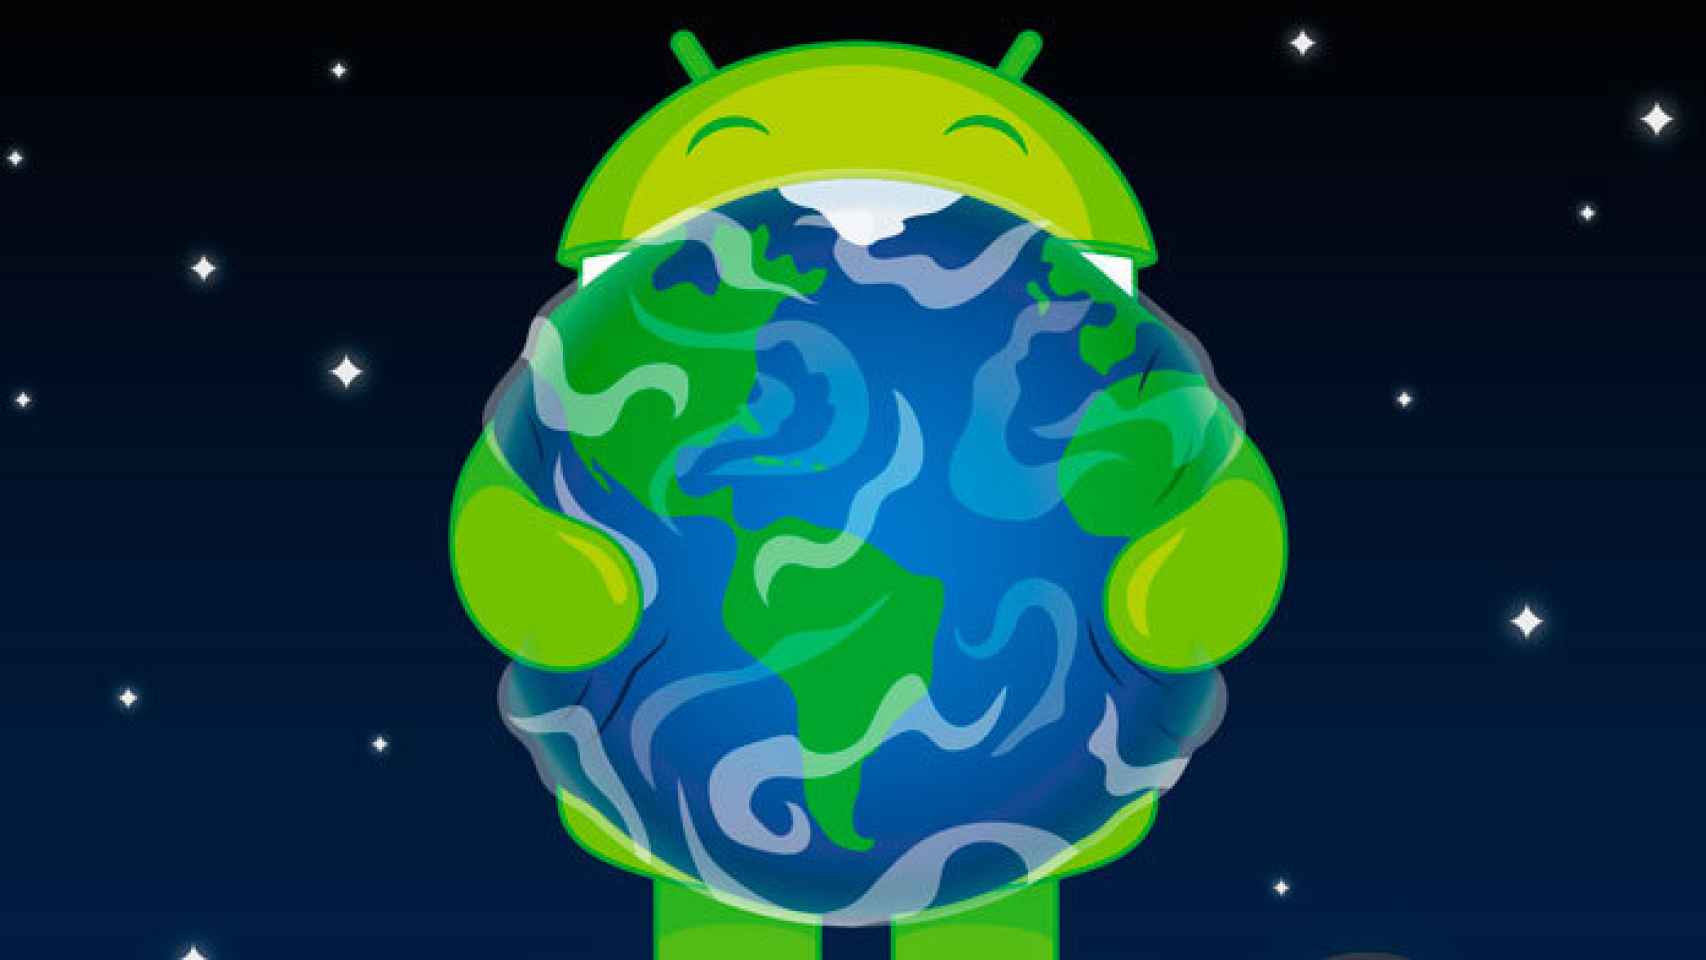 El Androide sostenible: ¿Qué hacen los fabricantes para preservar el medio ambiente?